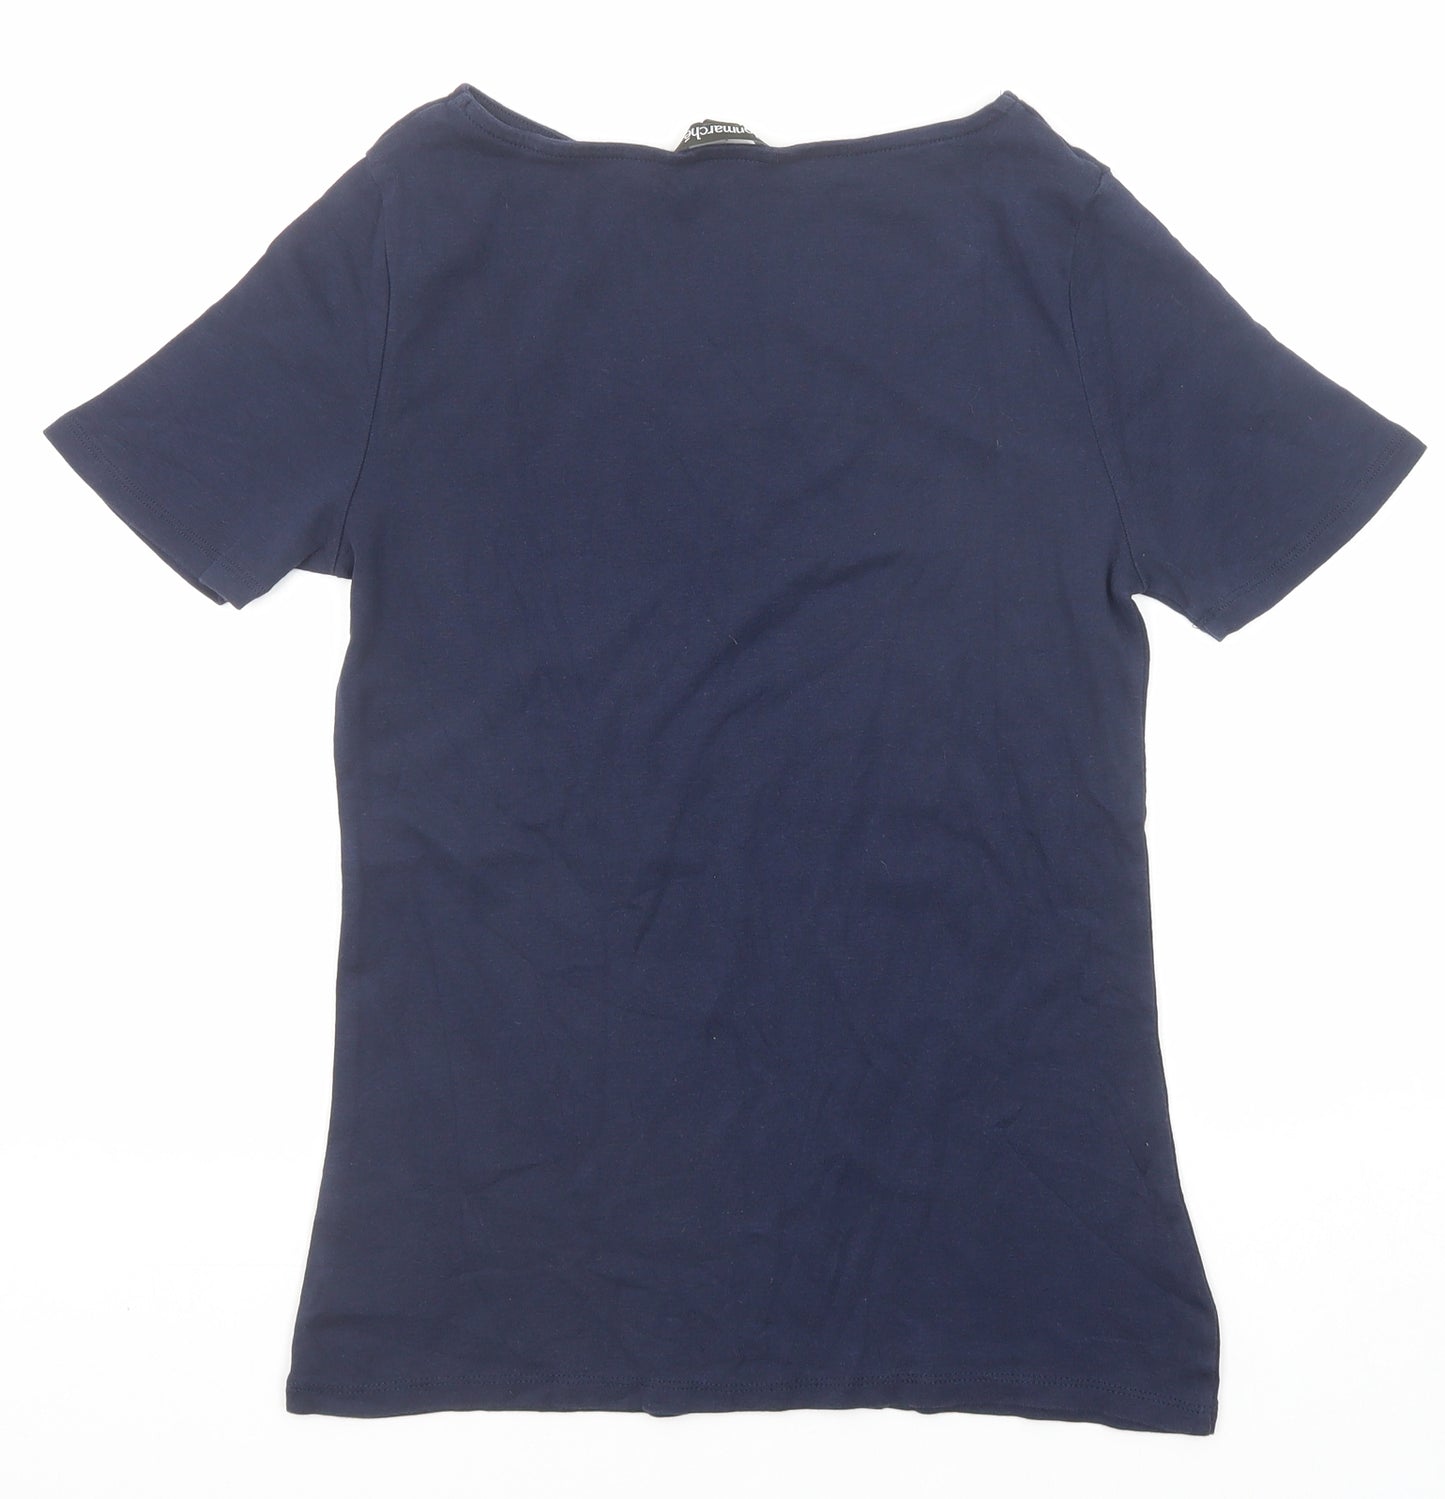 Bonmarché Womens Blue Cotton Basic T-Shirt Size 12 Round Neck